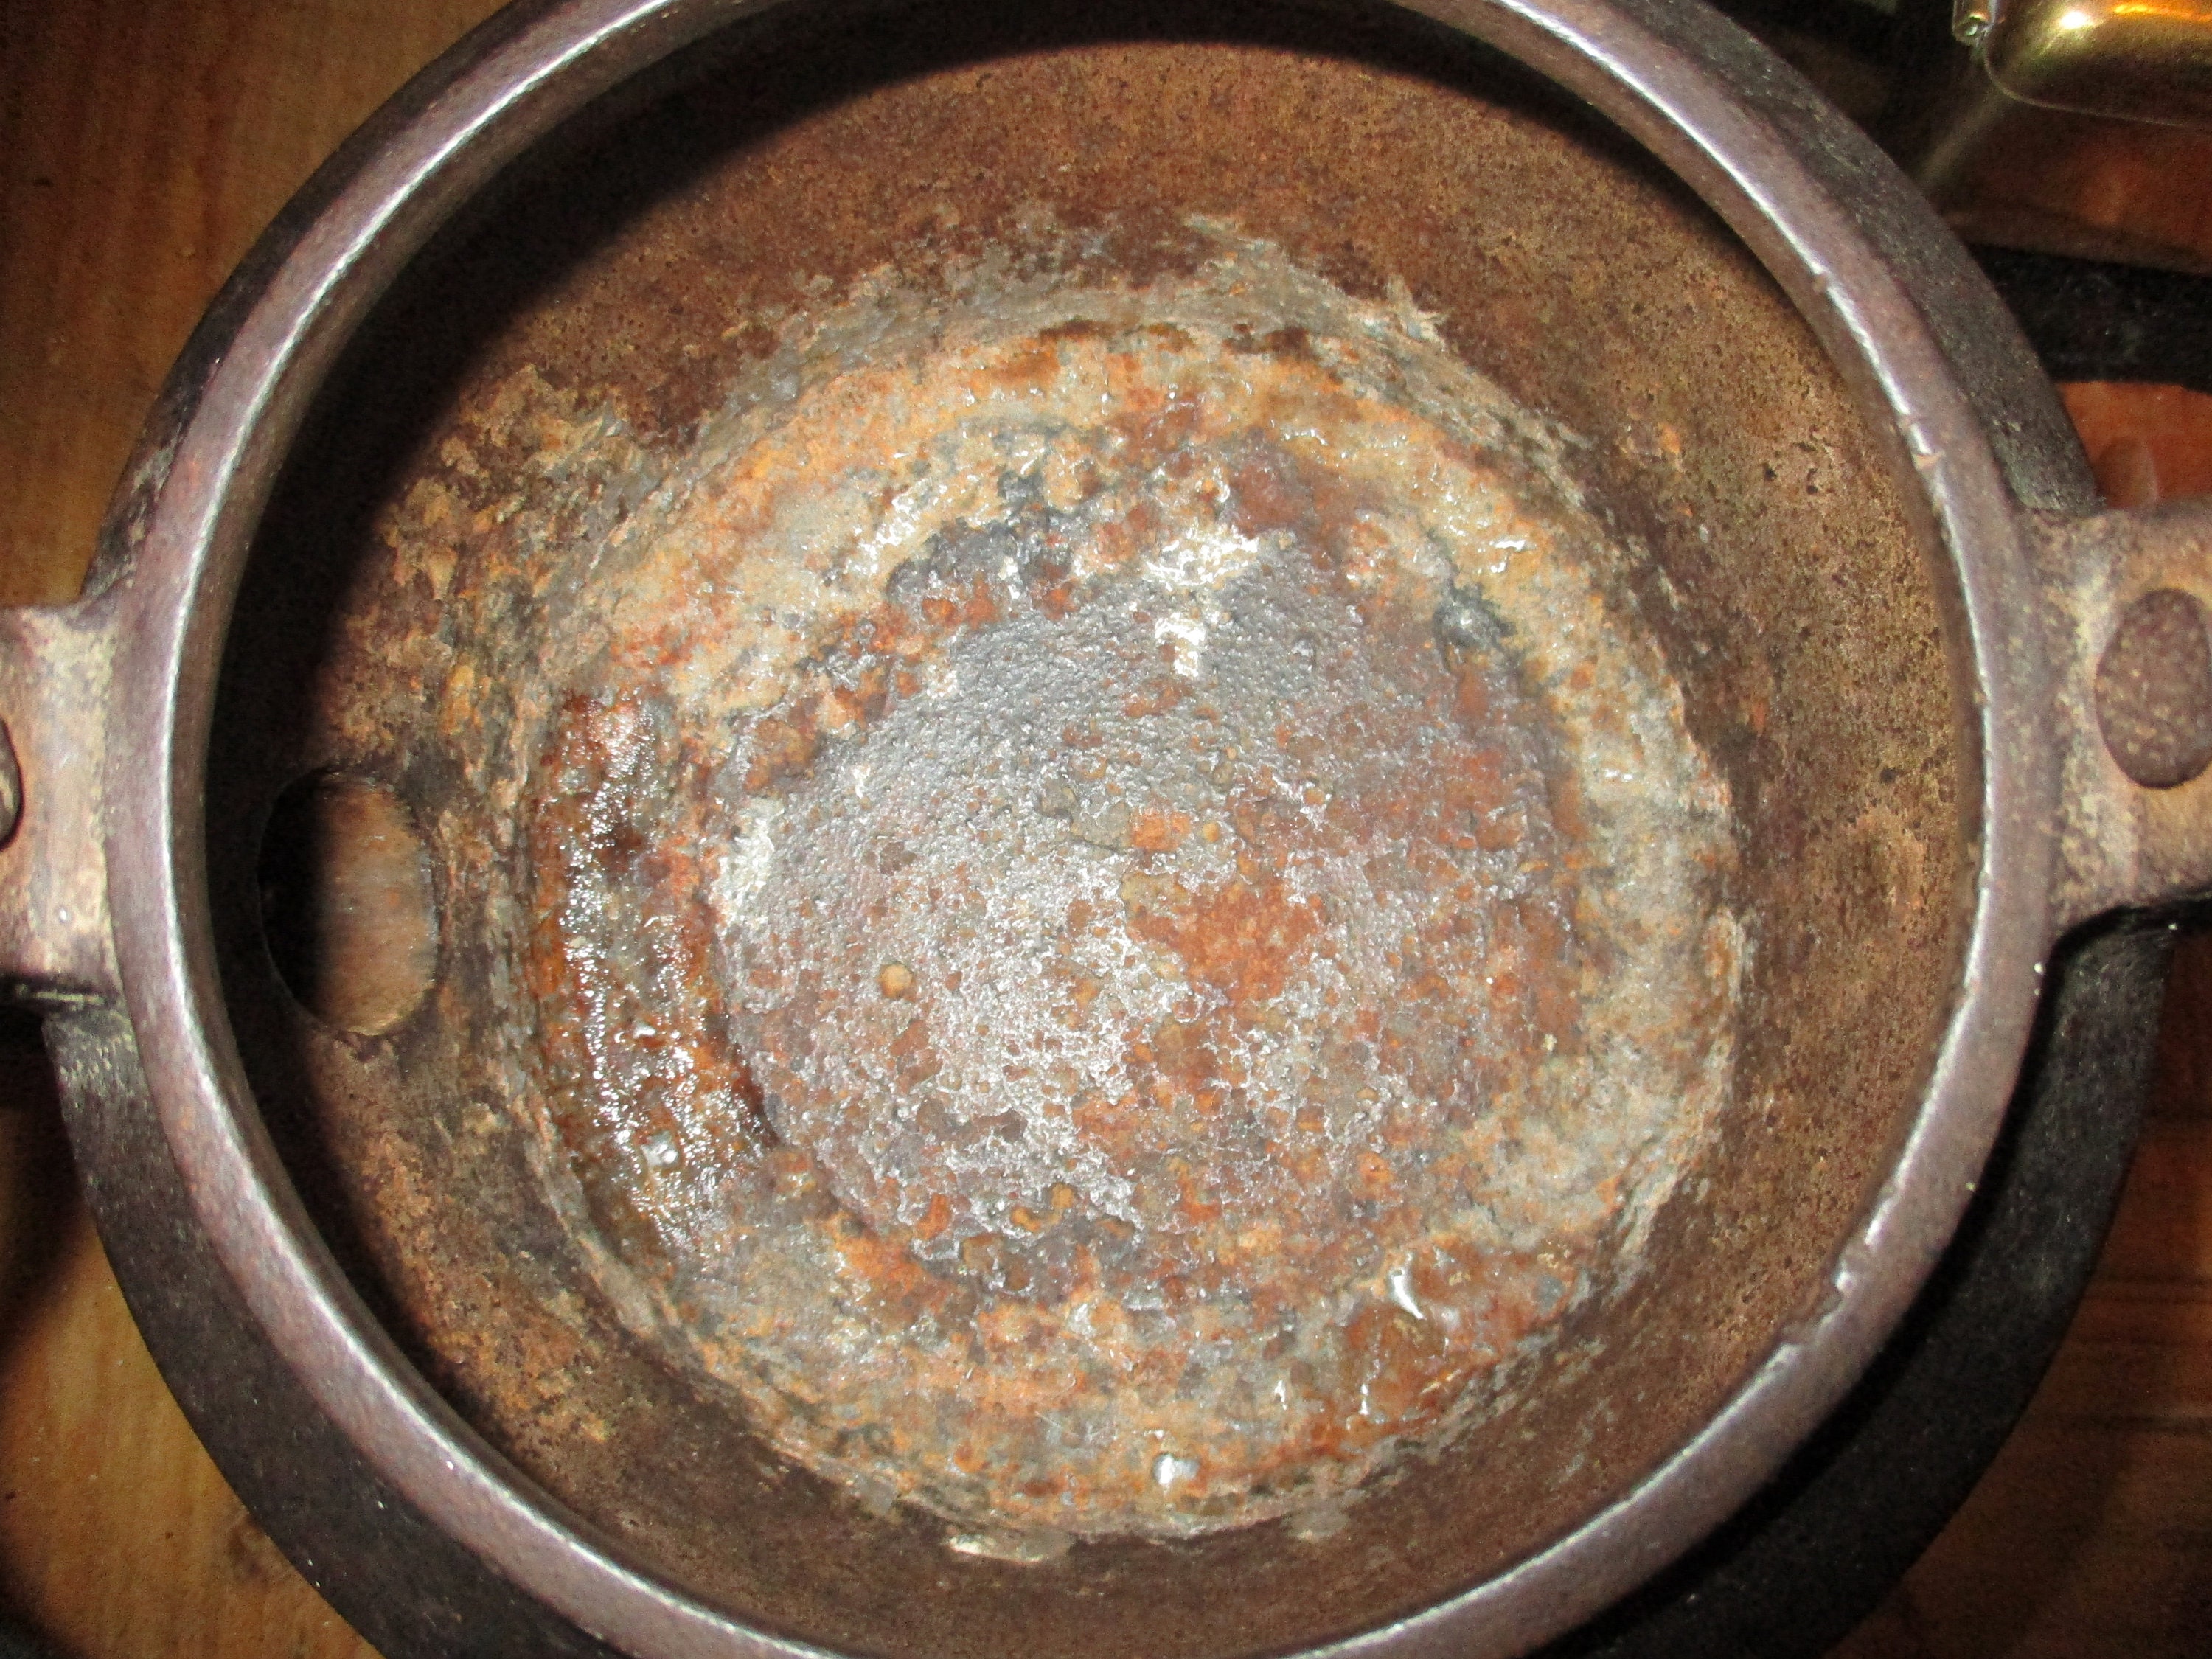 Vintage Cast Iron Tea Kettle Coffee Pot Large Swivel Lid Bird Spout LARGE